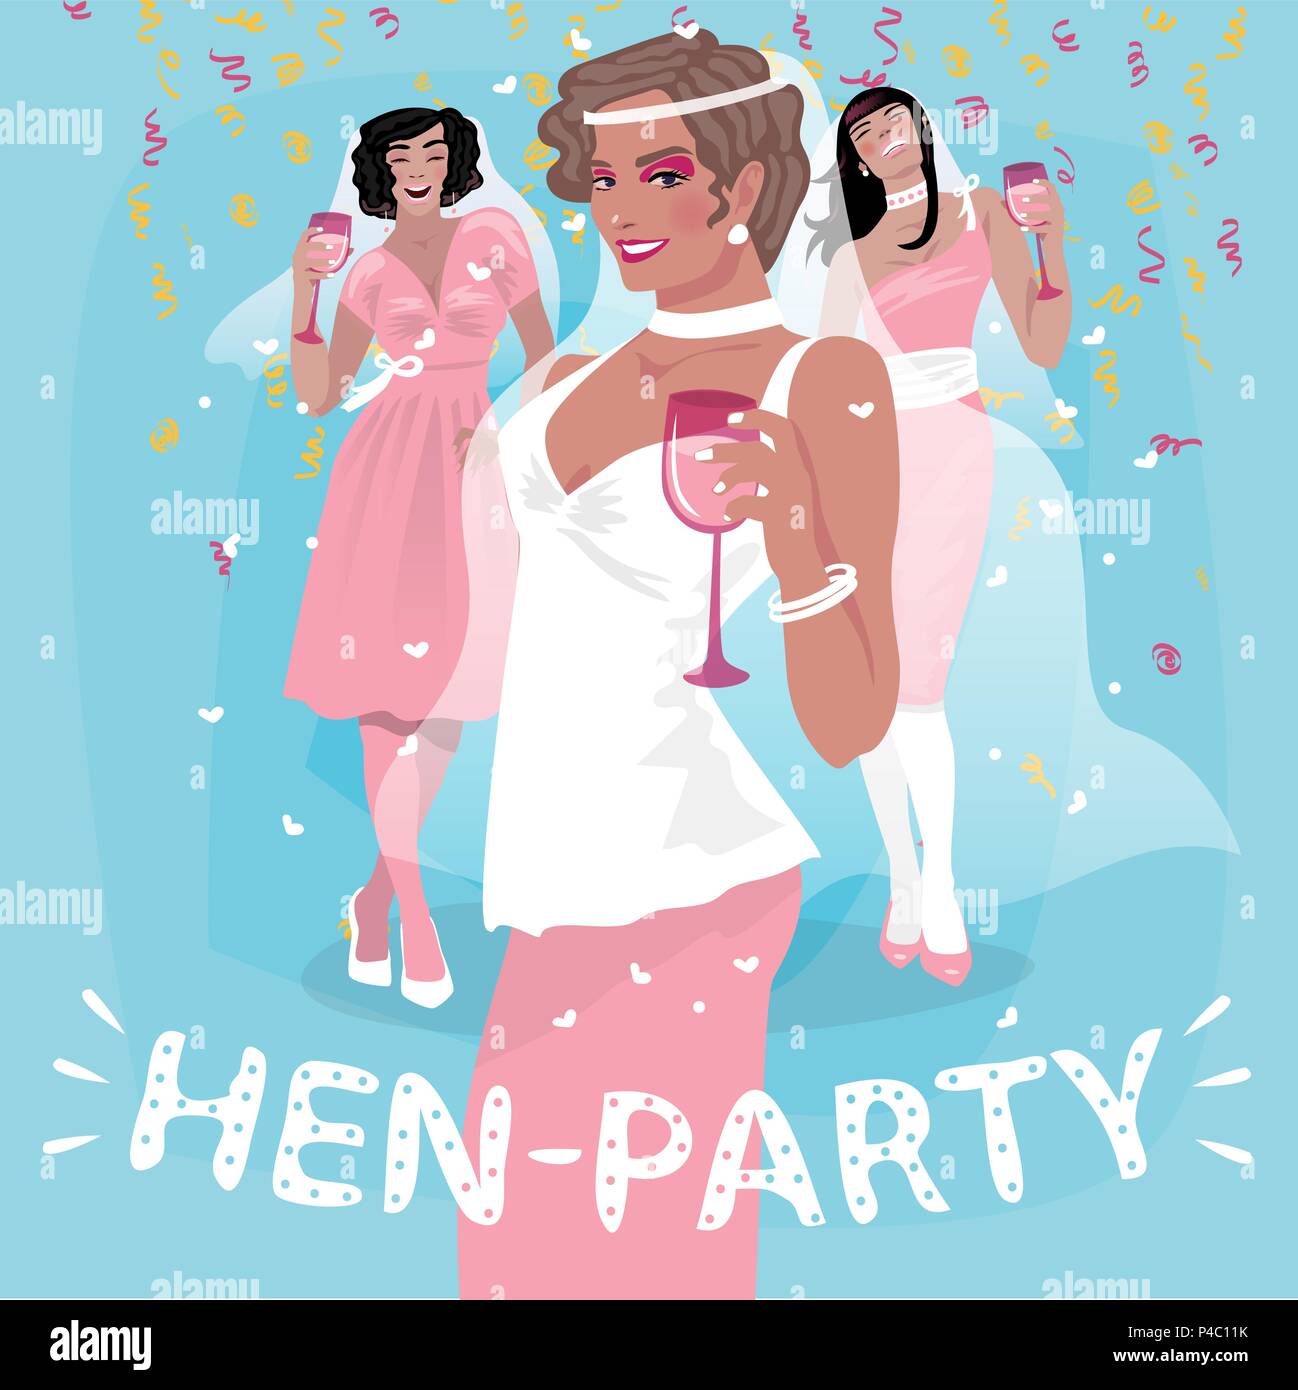 Drei attraktive junge Mädchen in rosa Brautkleider herzlich willkommen. Einladung zur Party oder Bachelorette Party Konzept Henne. Vereinfachende realistische Cartoon Art Stock Vektor